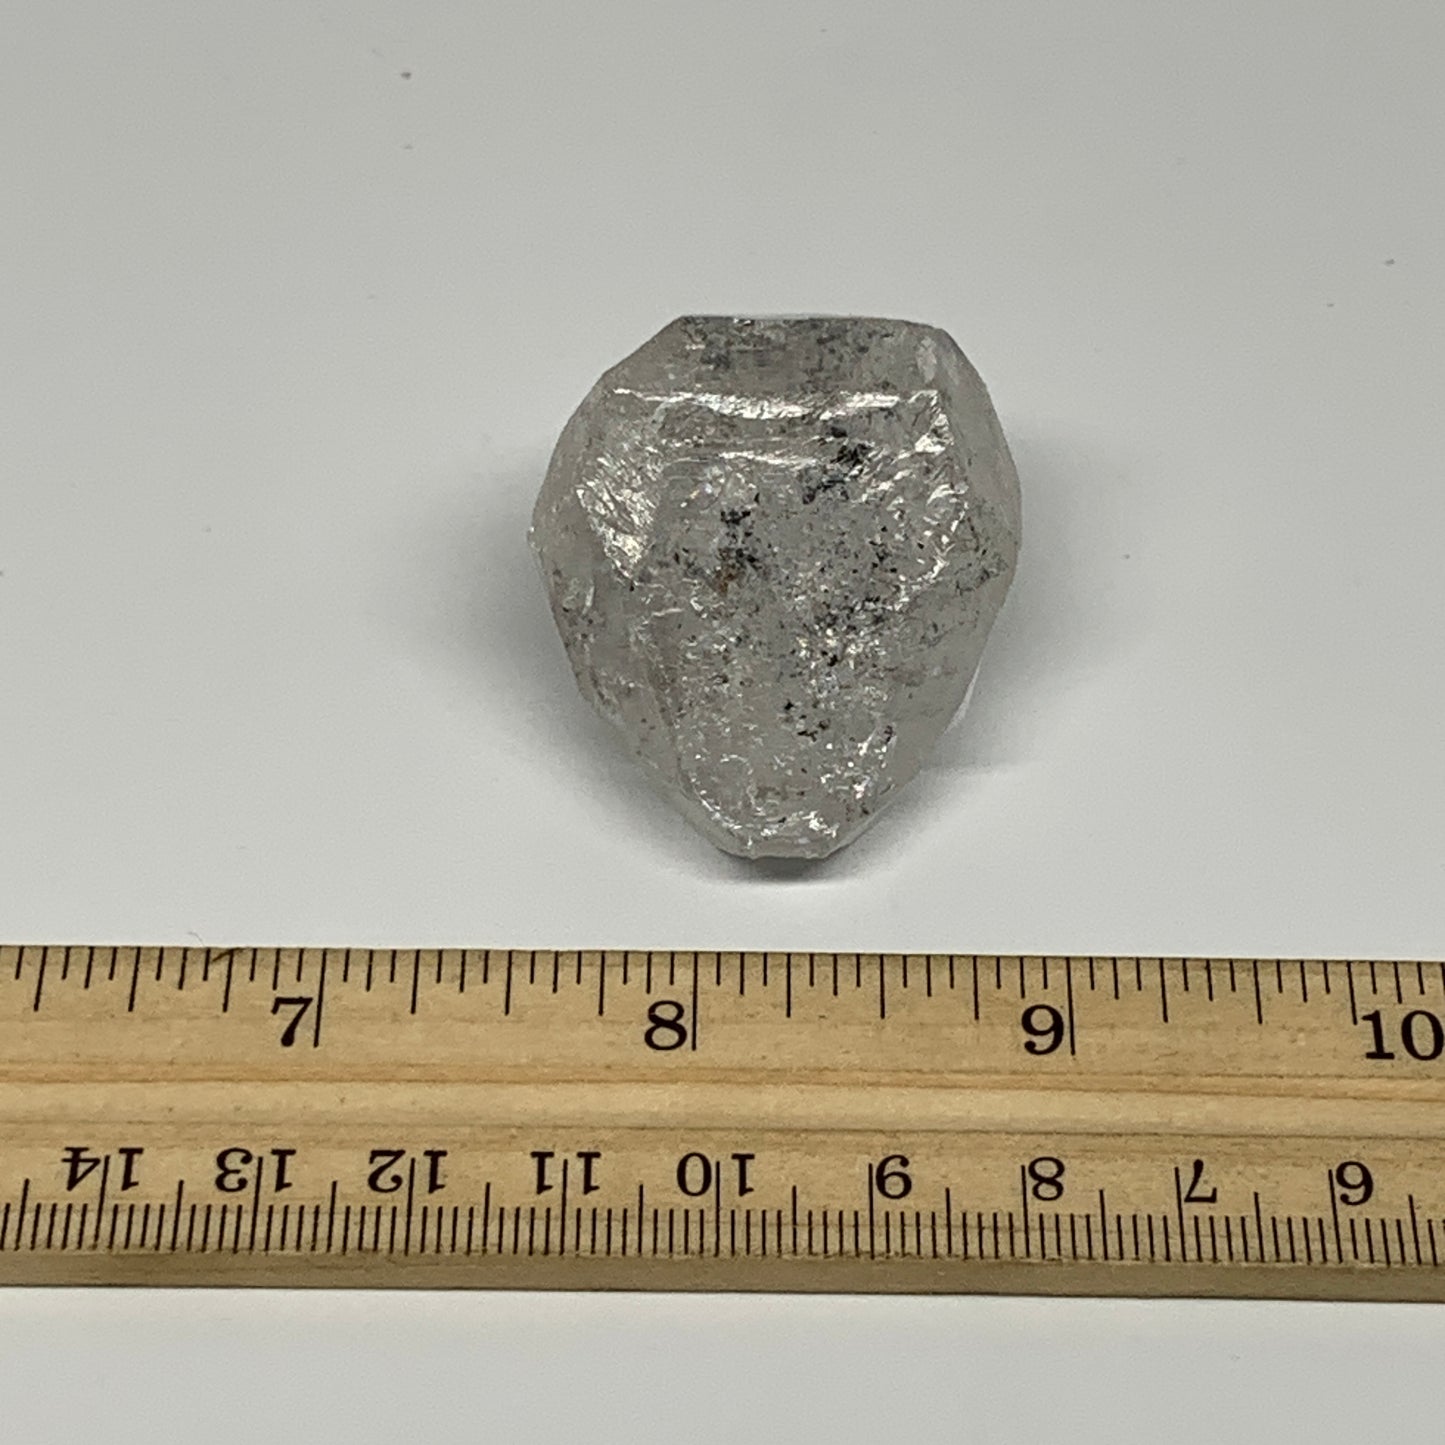 36.4g, 1.7"x1.4"x0.7", Natural Window Quartz Crystal Terminated @Pakistan,B27507